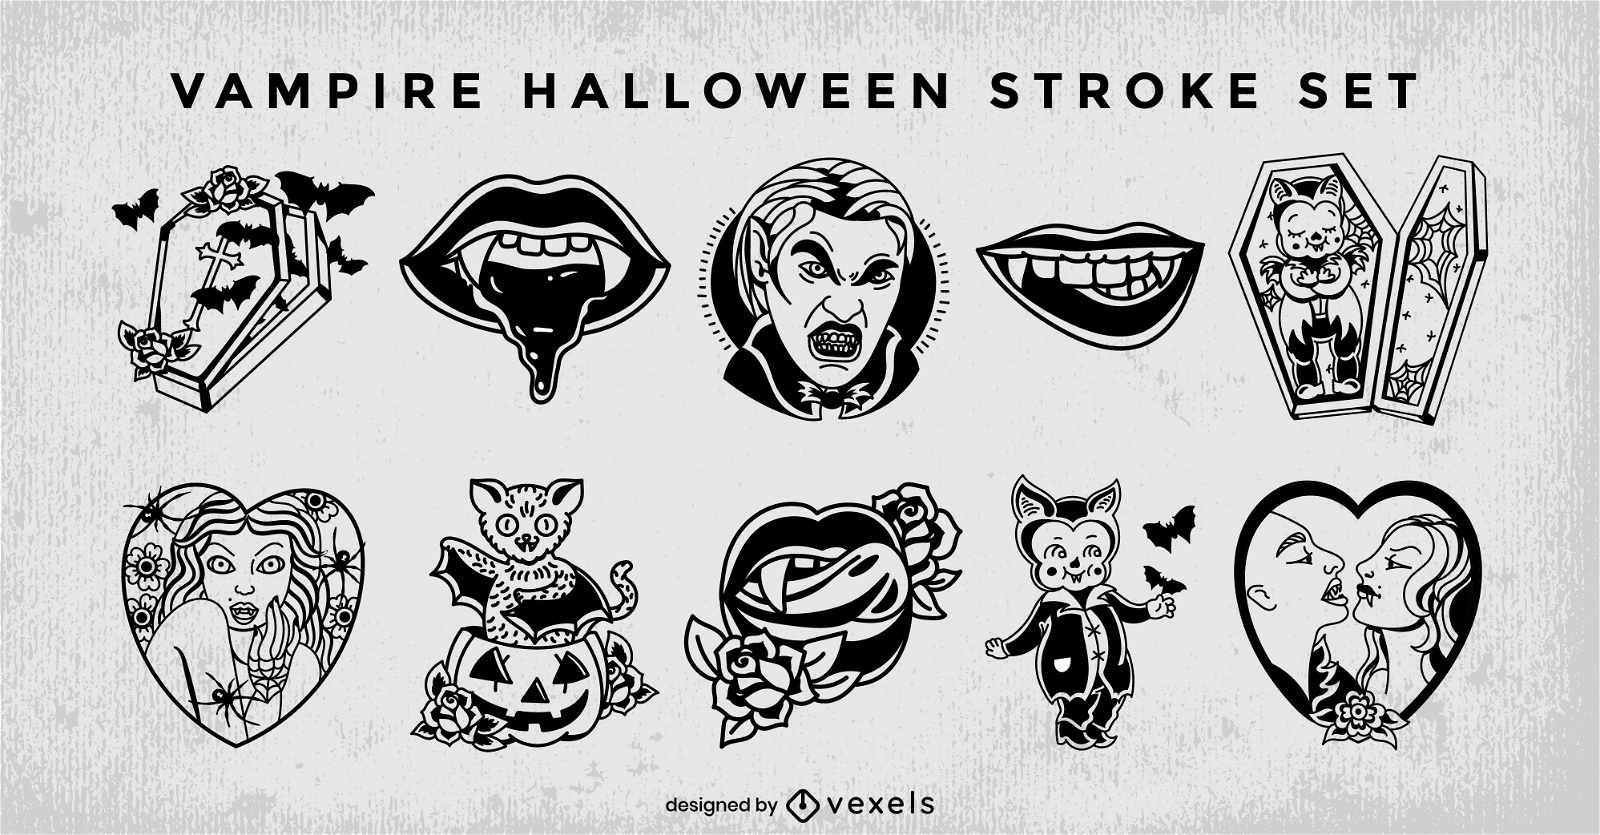 Vampire monster halloween stroke set